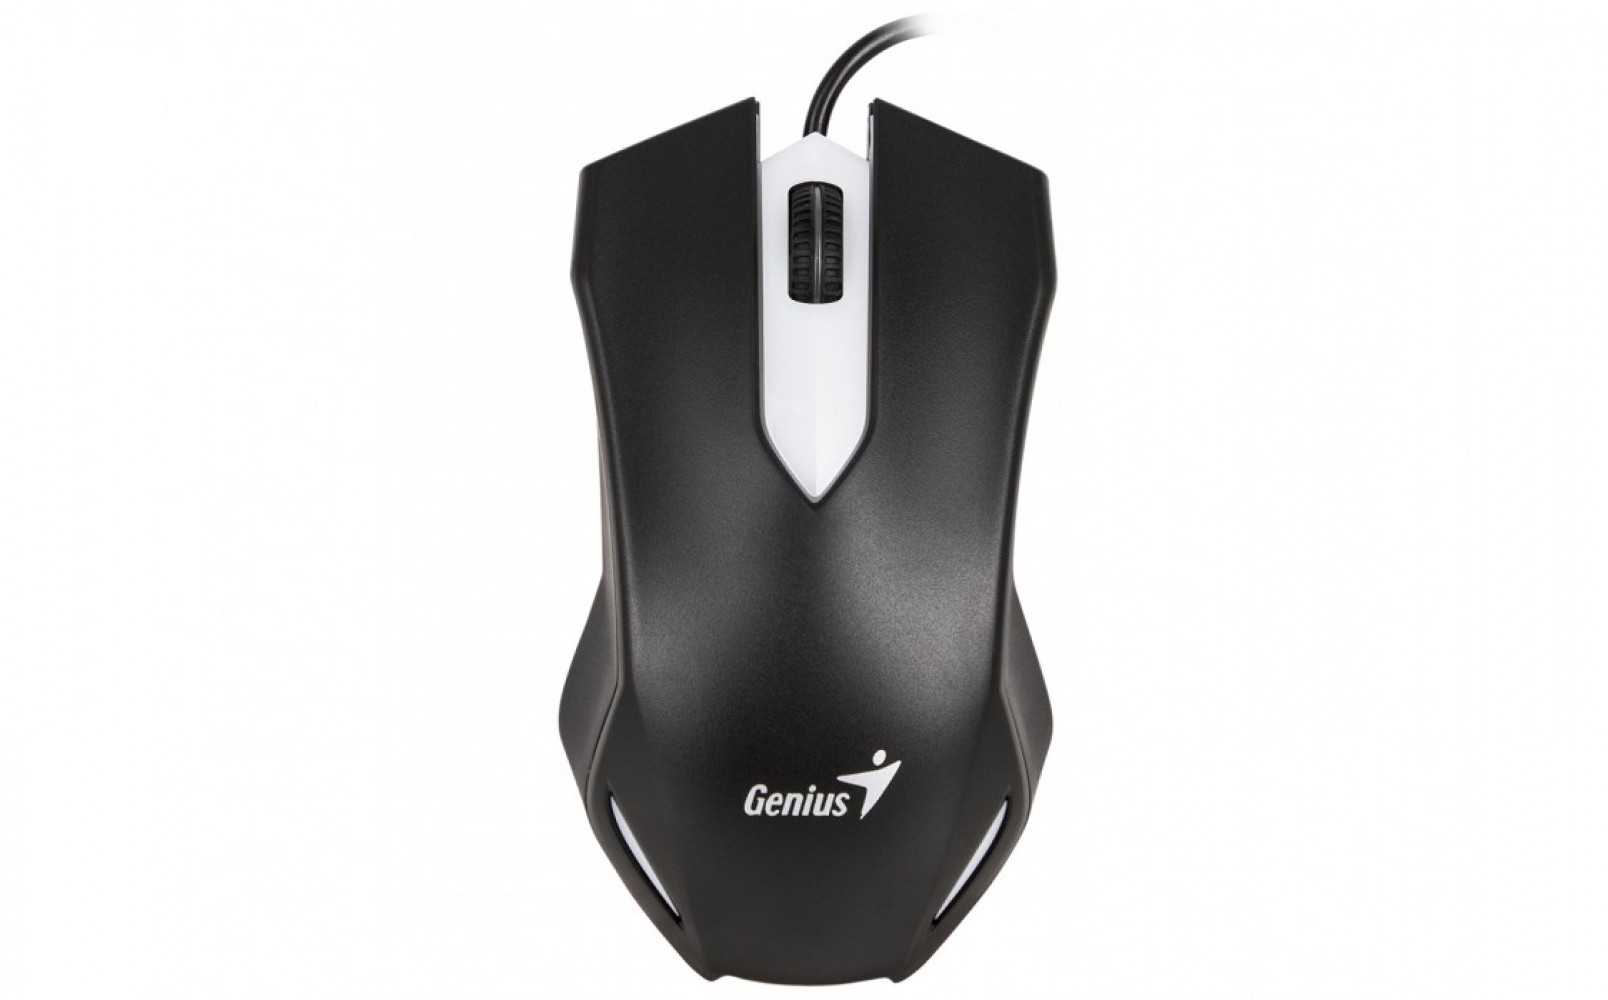 Genius x-g510 usb (5 кнопок, черный) - купить , скидки, цена, отзывы, обзор, характеристики - мыши